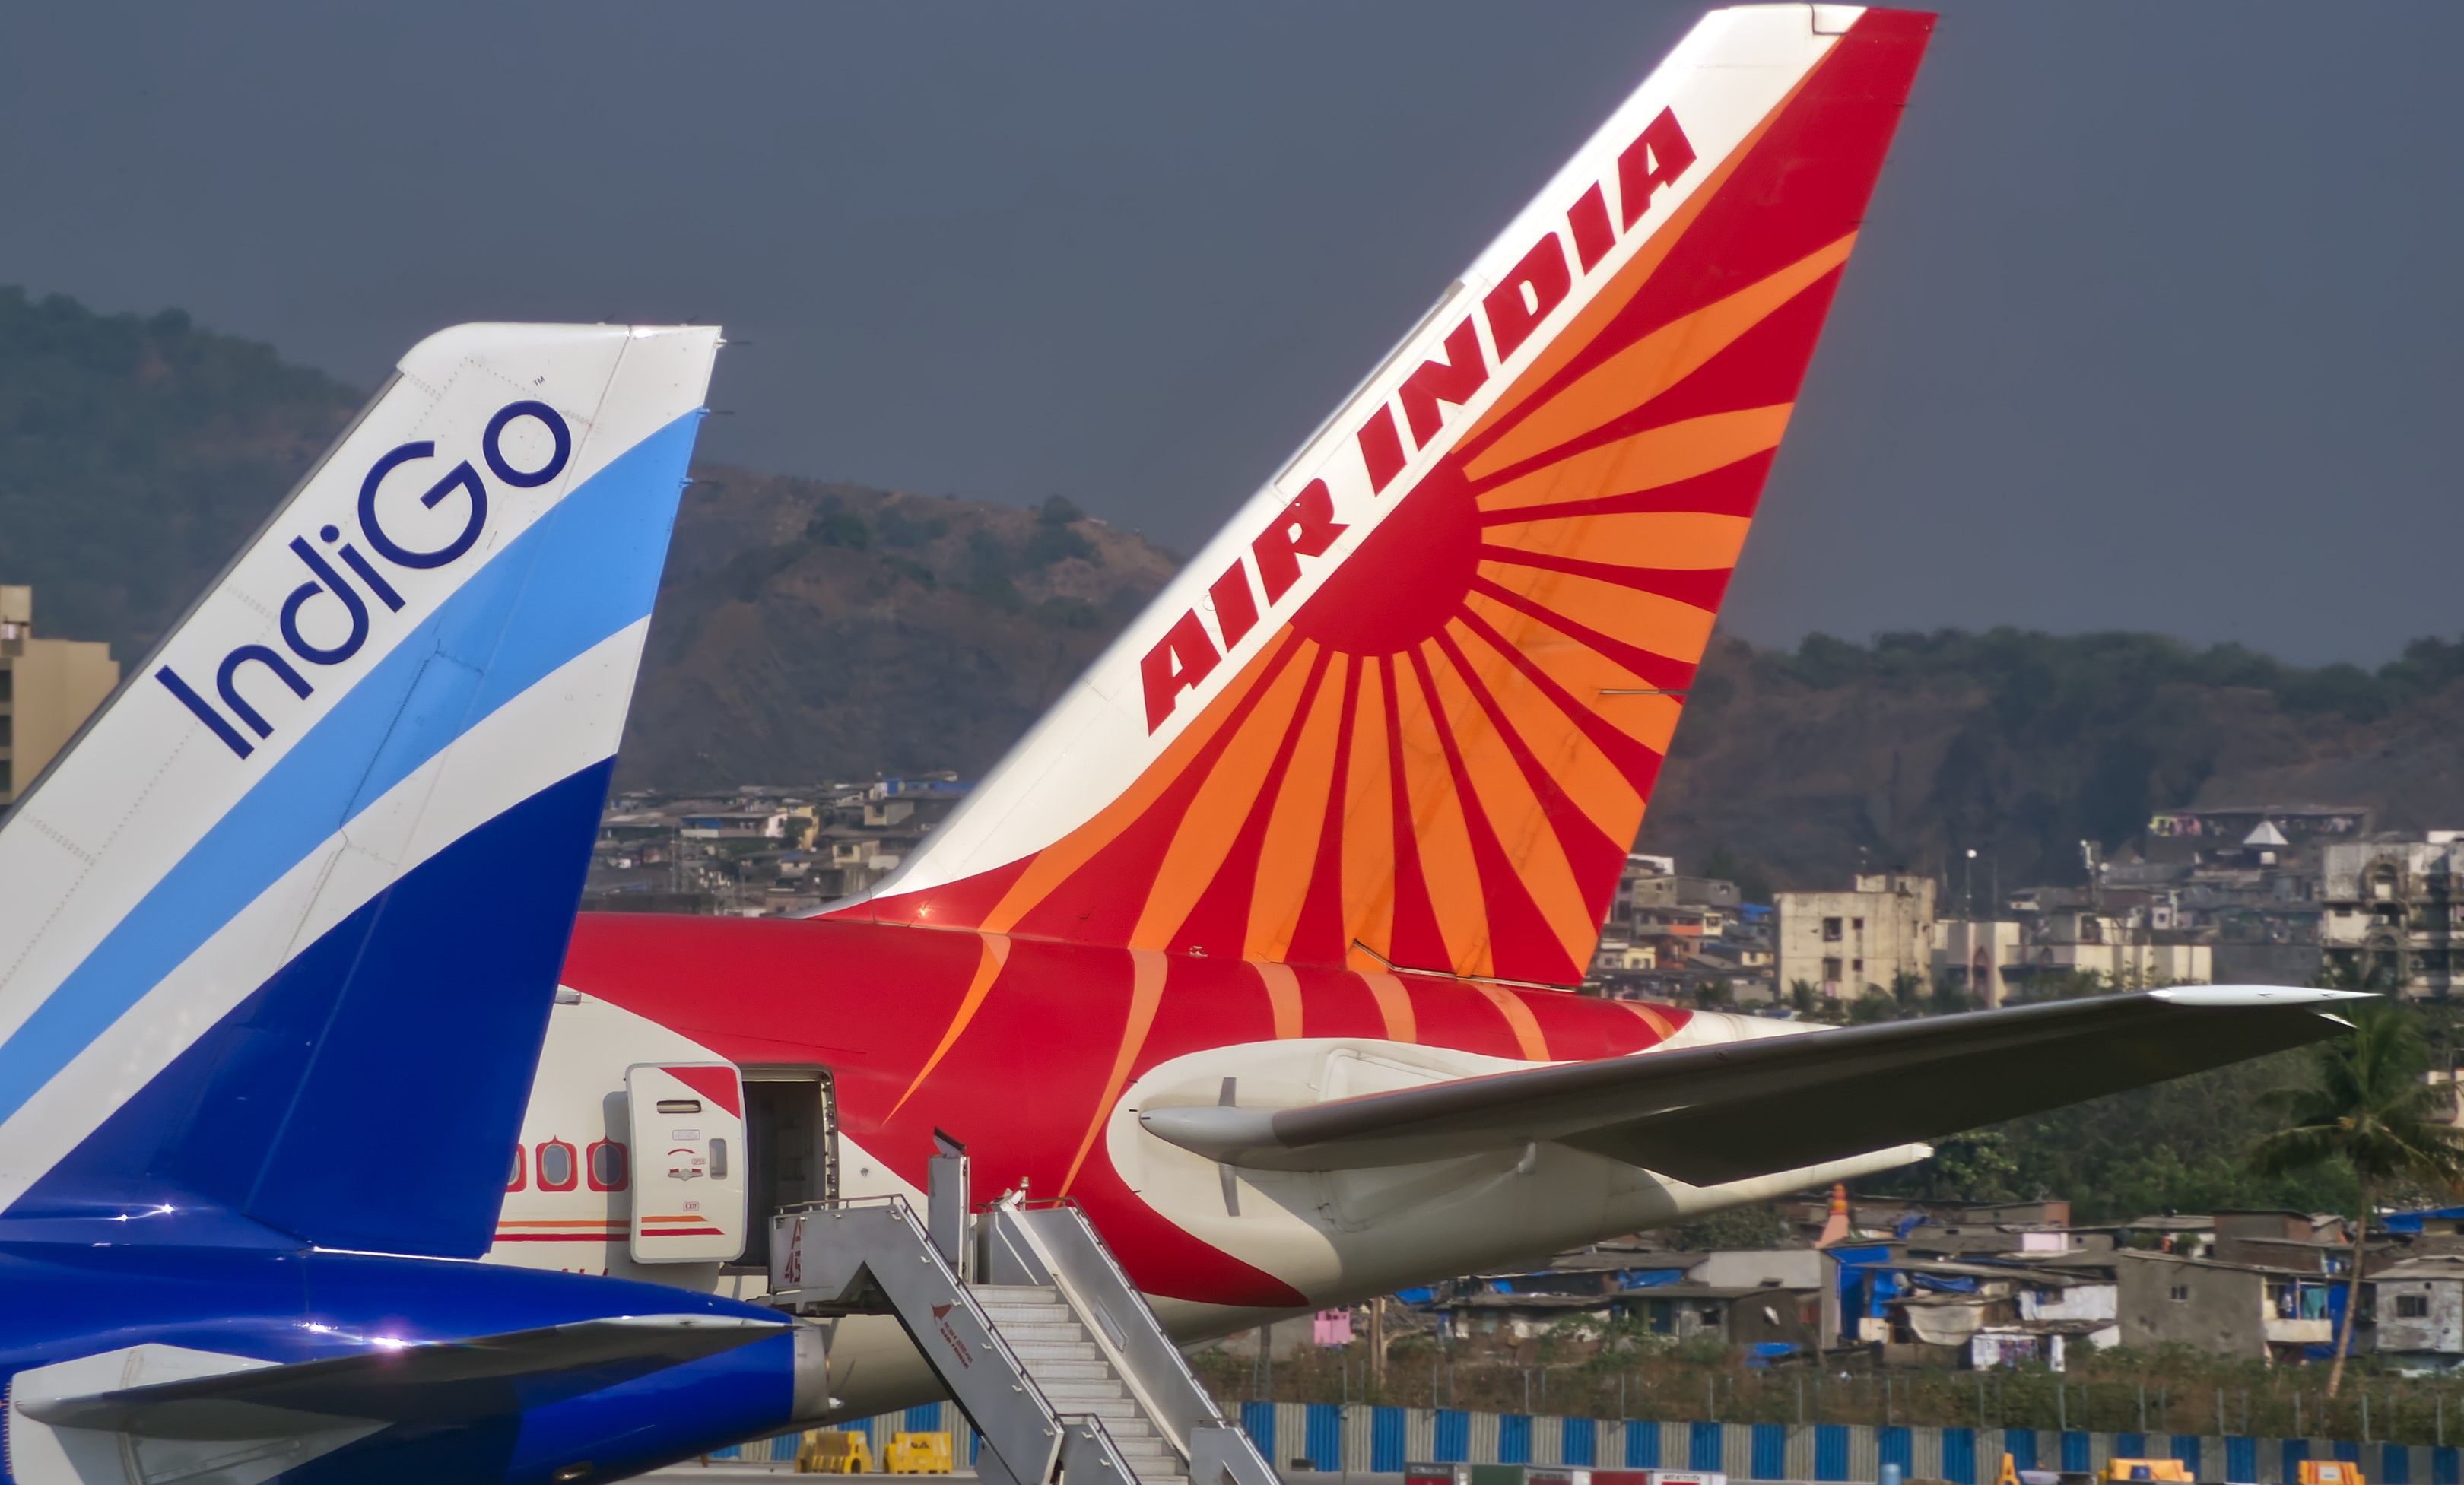 Air India and IndiGo planes parked at Mumbai Airport